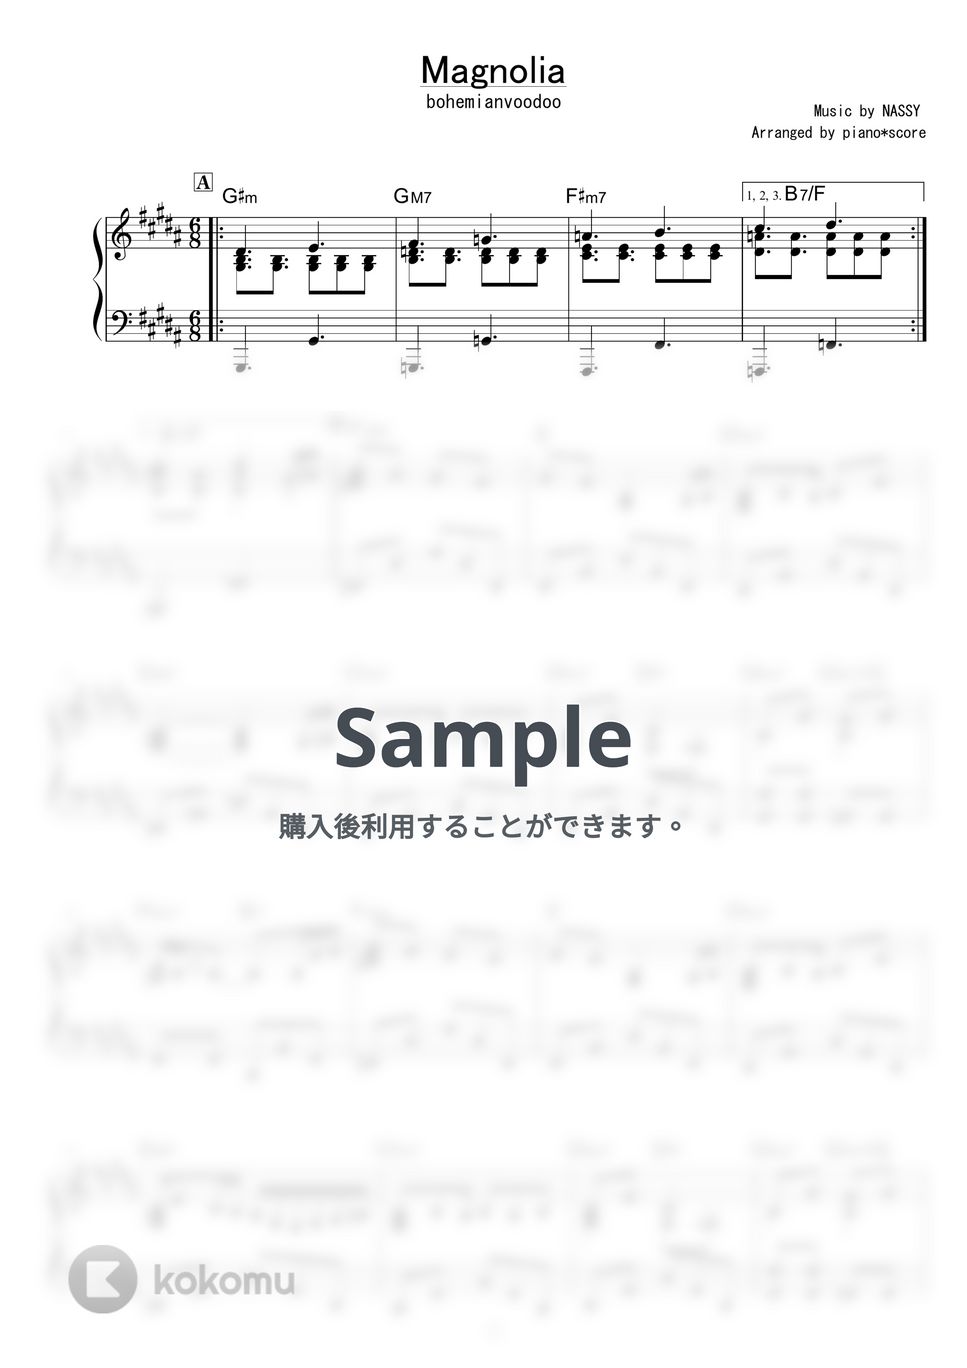 bohemianvoodoo - Magnolia by piano*score